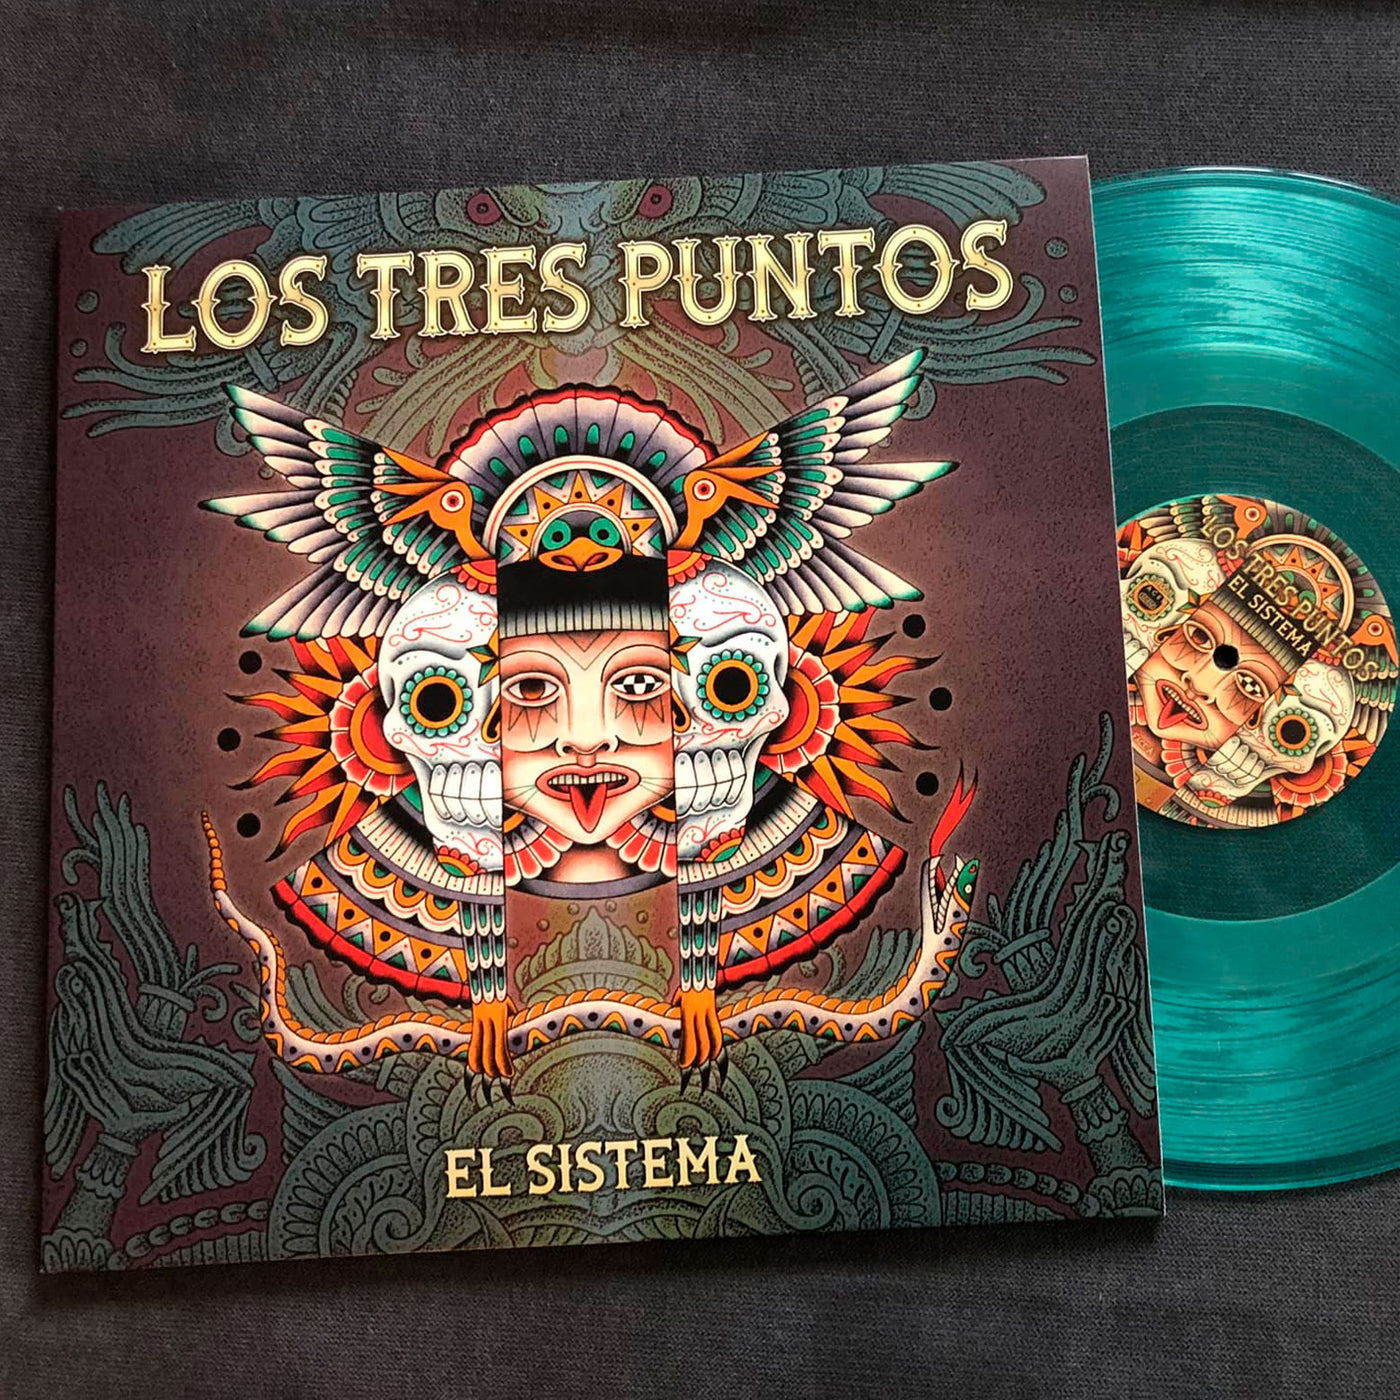 LOS TRES PUNTOS "El Sistema", vinyle vert translucide !